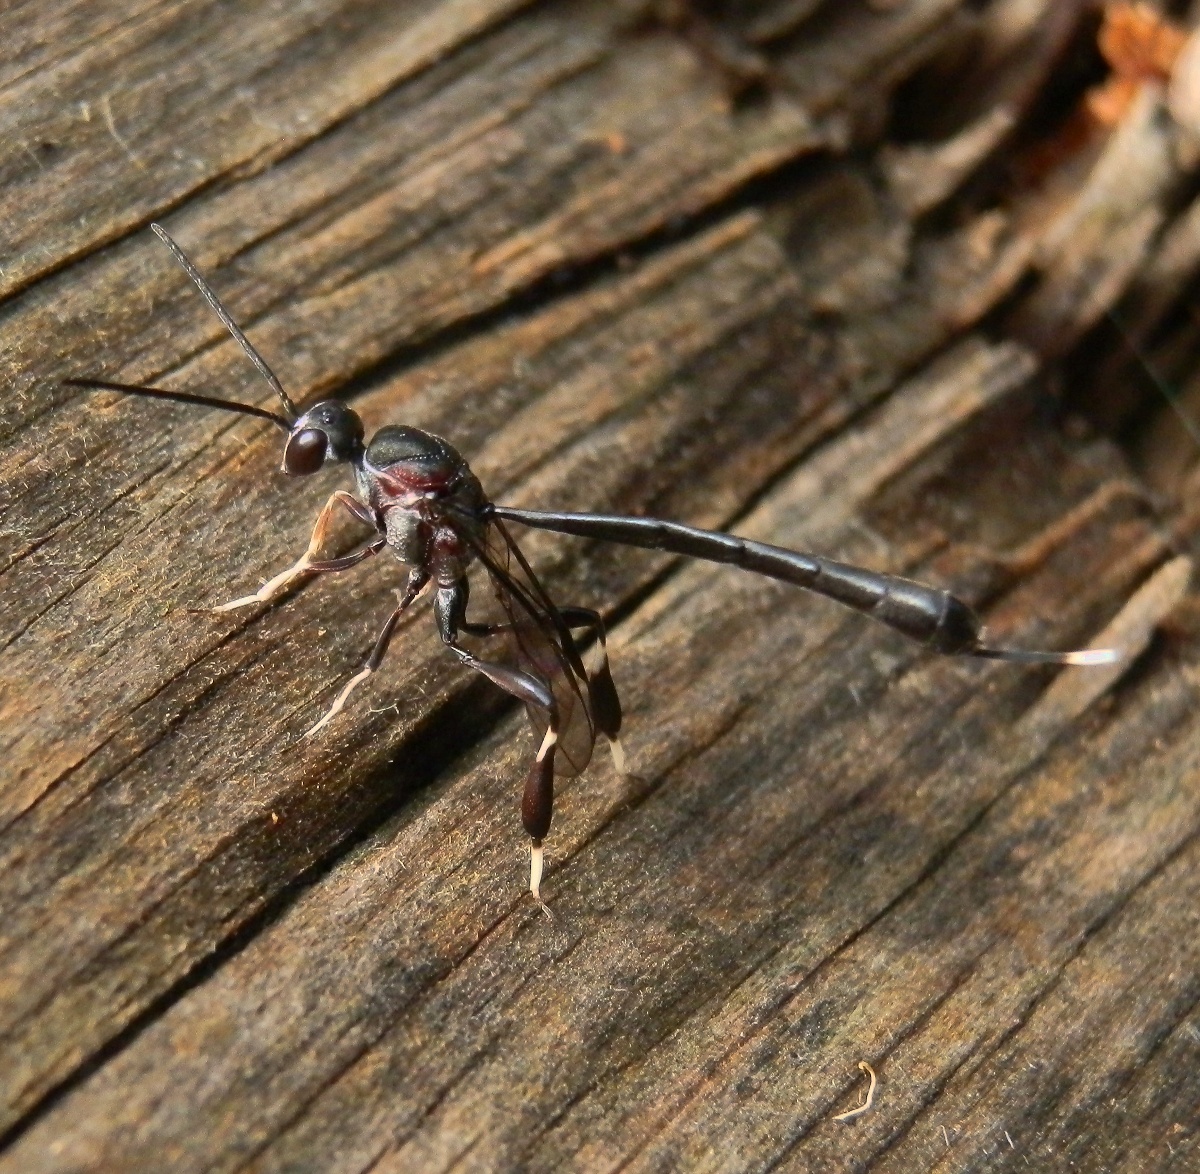 Gasteruptiid Wasp - female